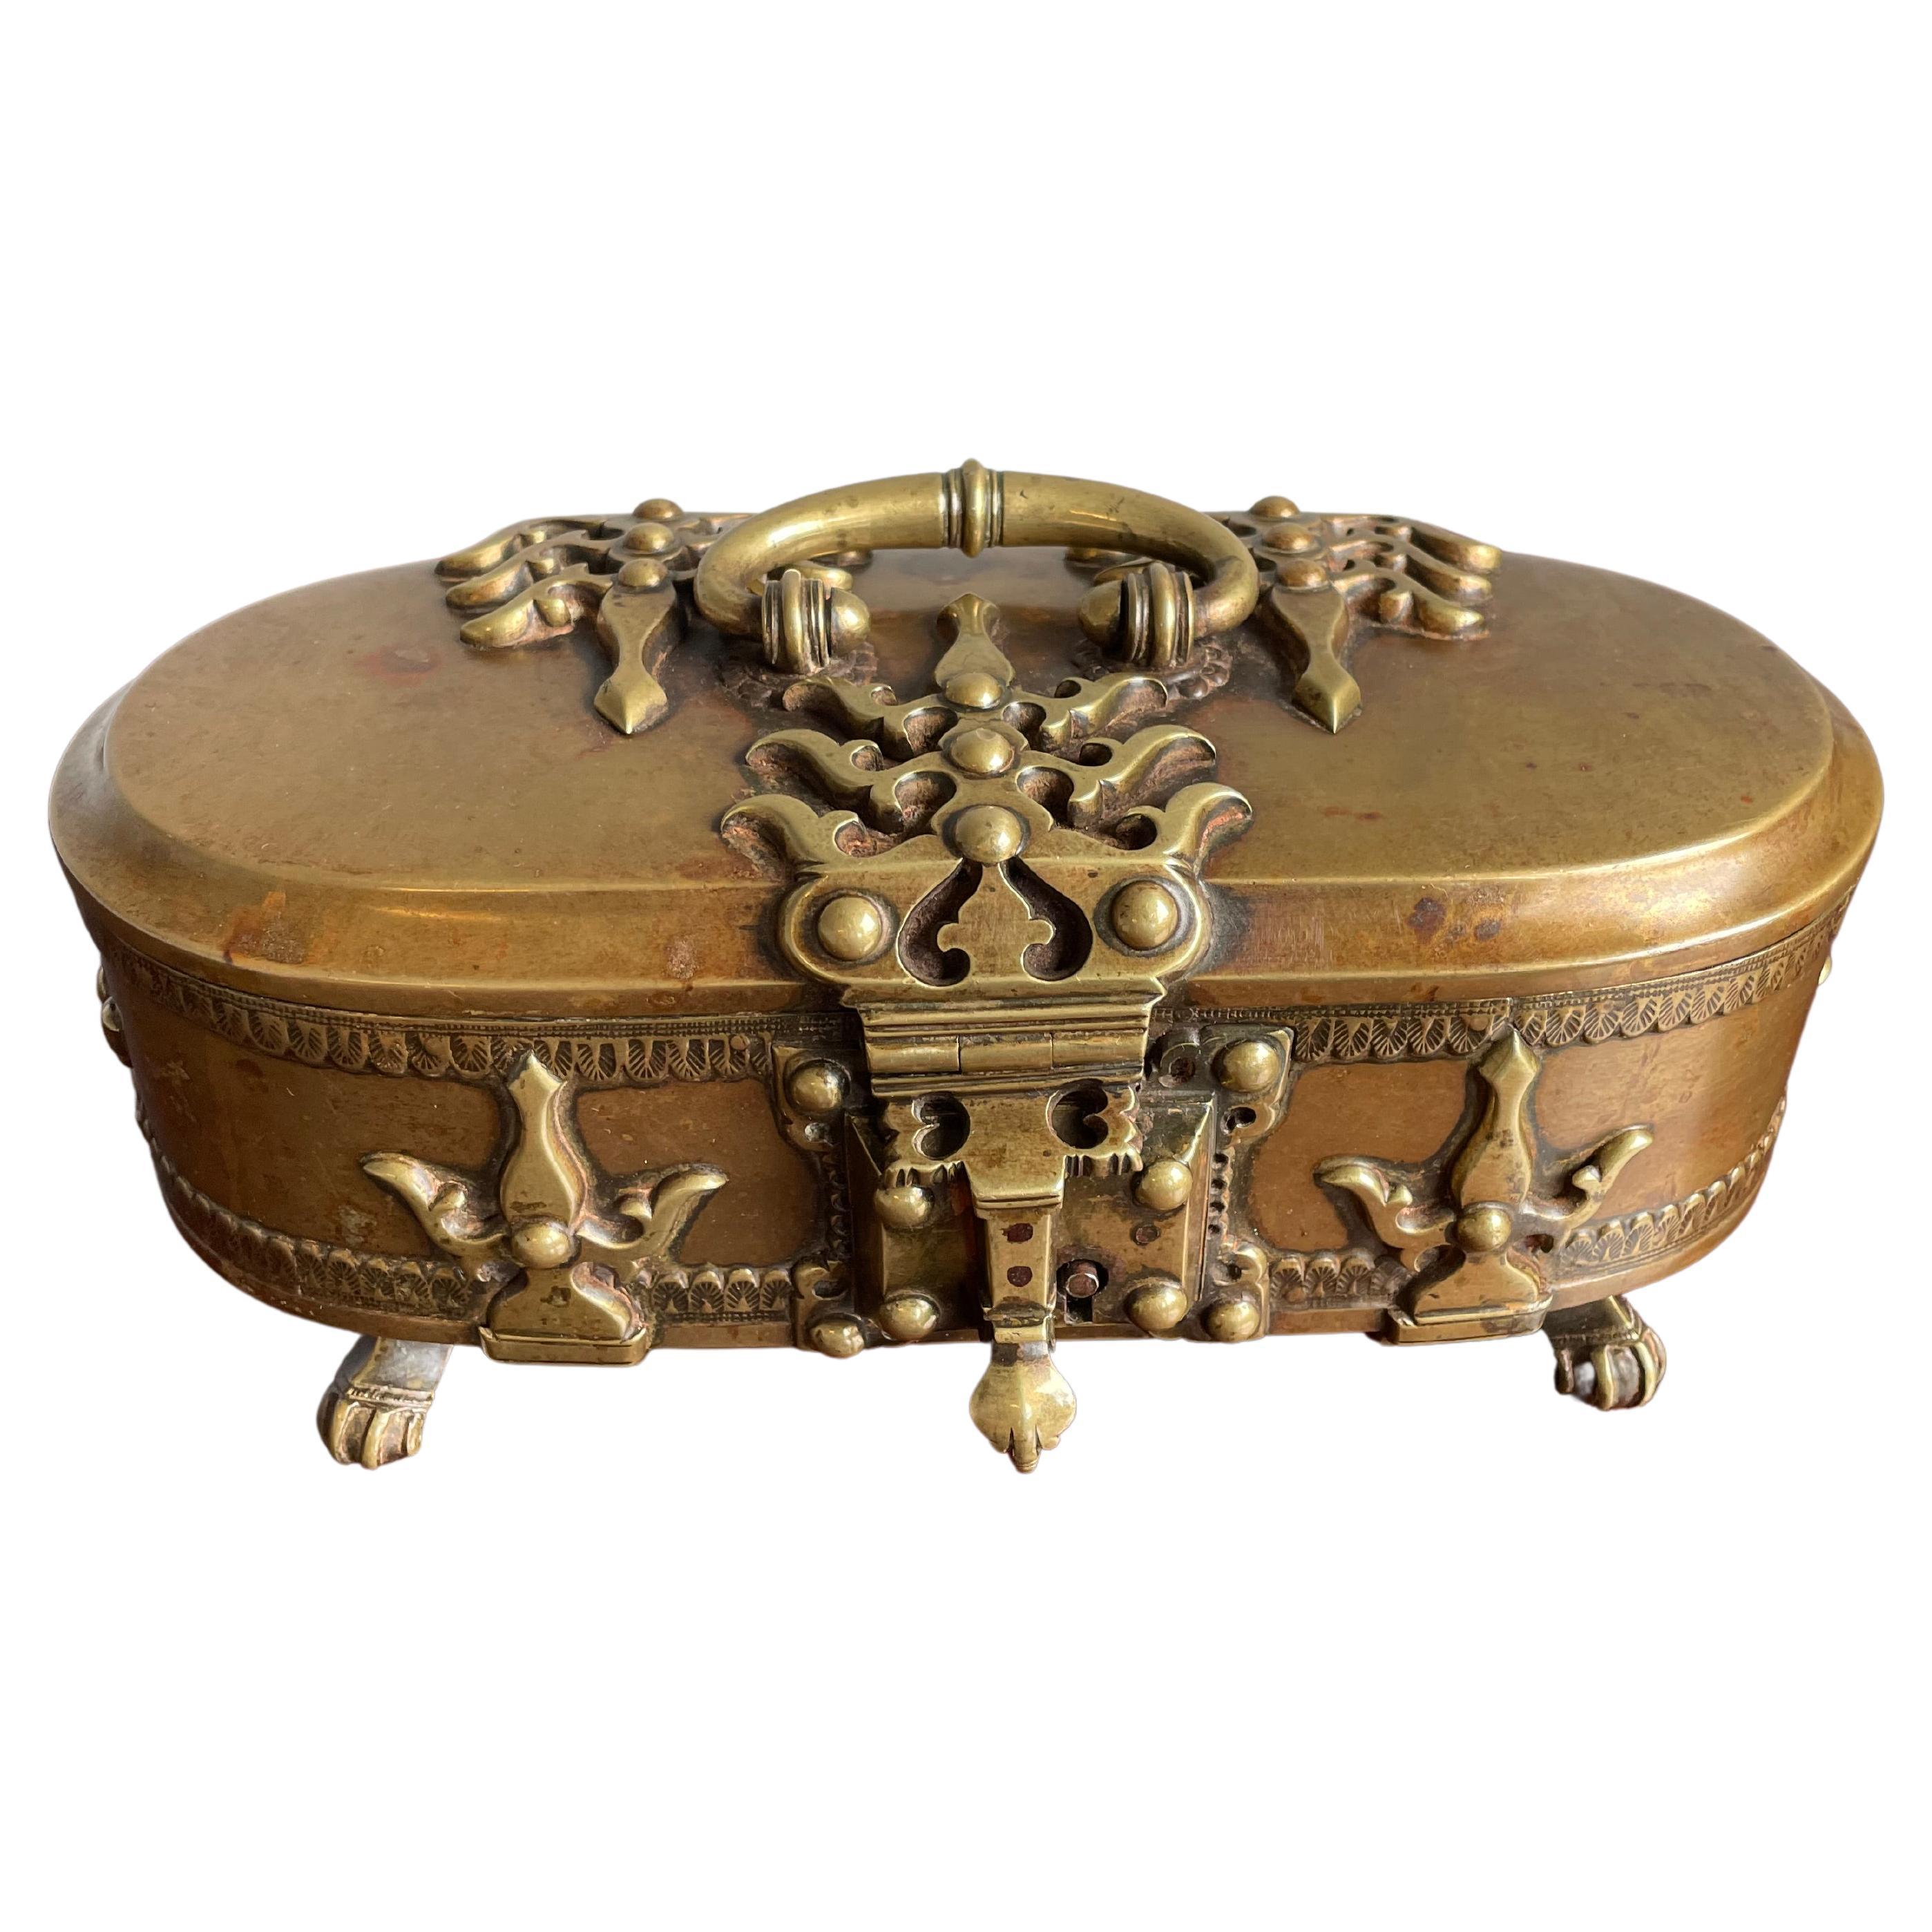 Boîte à noix unique et étonnante en bronze et laiton des années 1800, qualité et état digne d'un musée